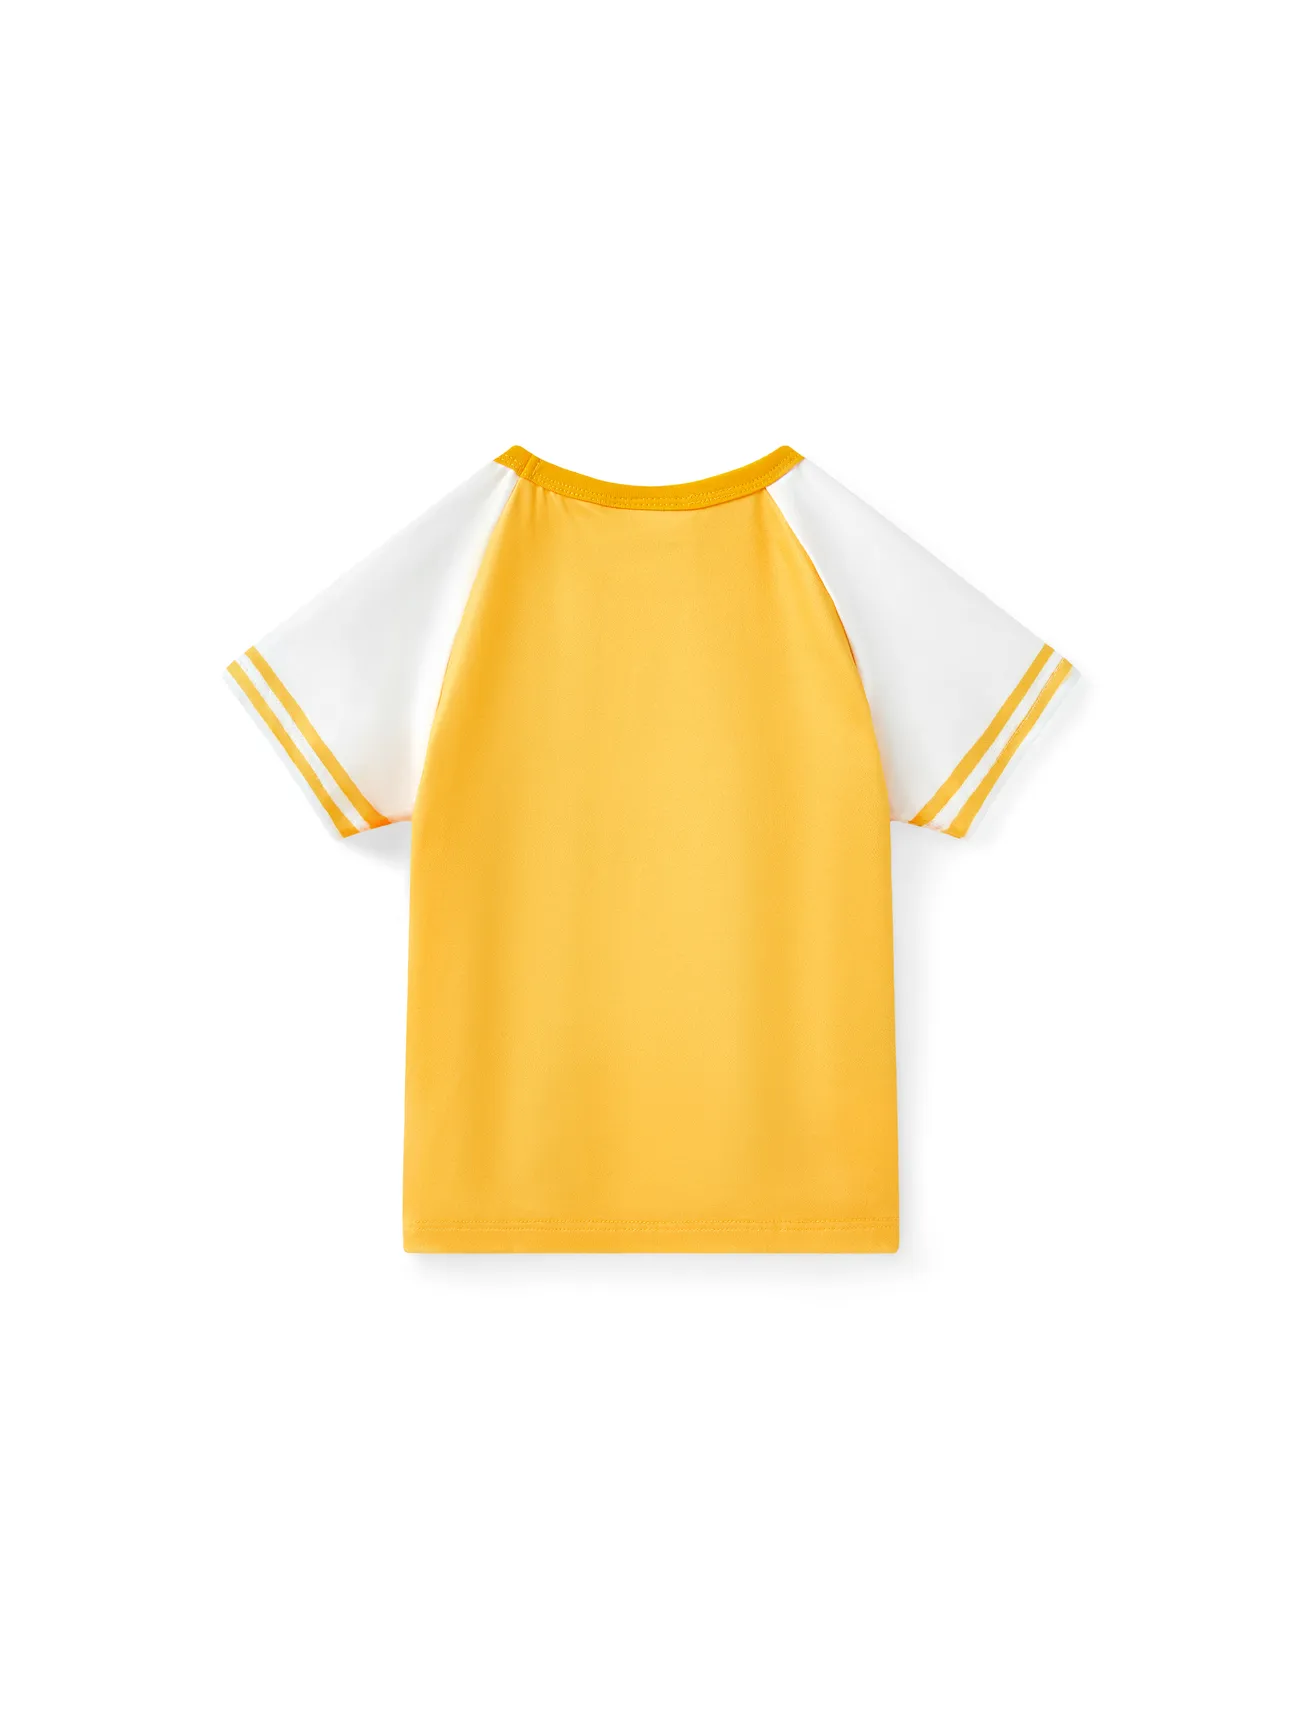 Looney Tunes Unisexe Enfantin T-Shirt jaune blanc big image 1